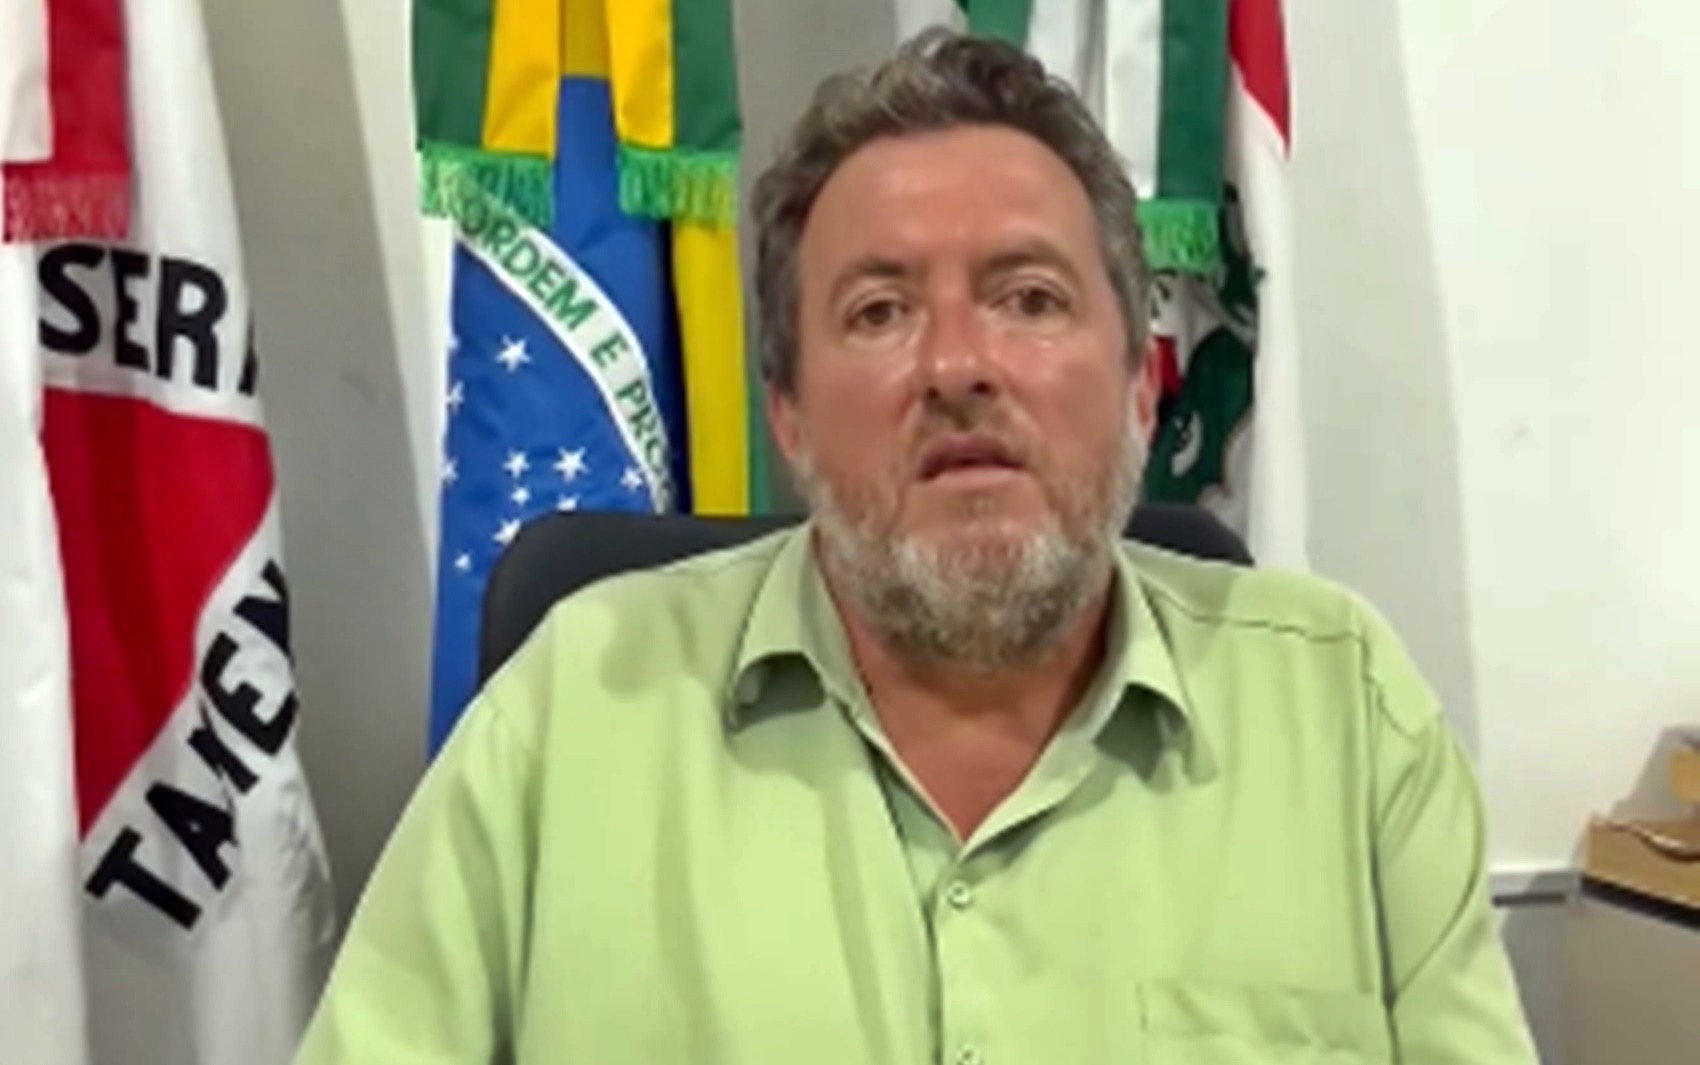 Justiça determina perda de mandato e de direitos políticos do prefeito de Bom Repouso, MG